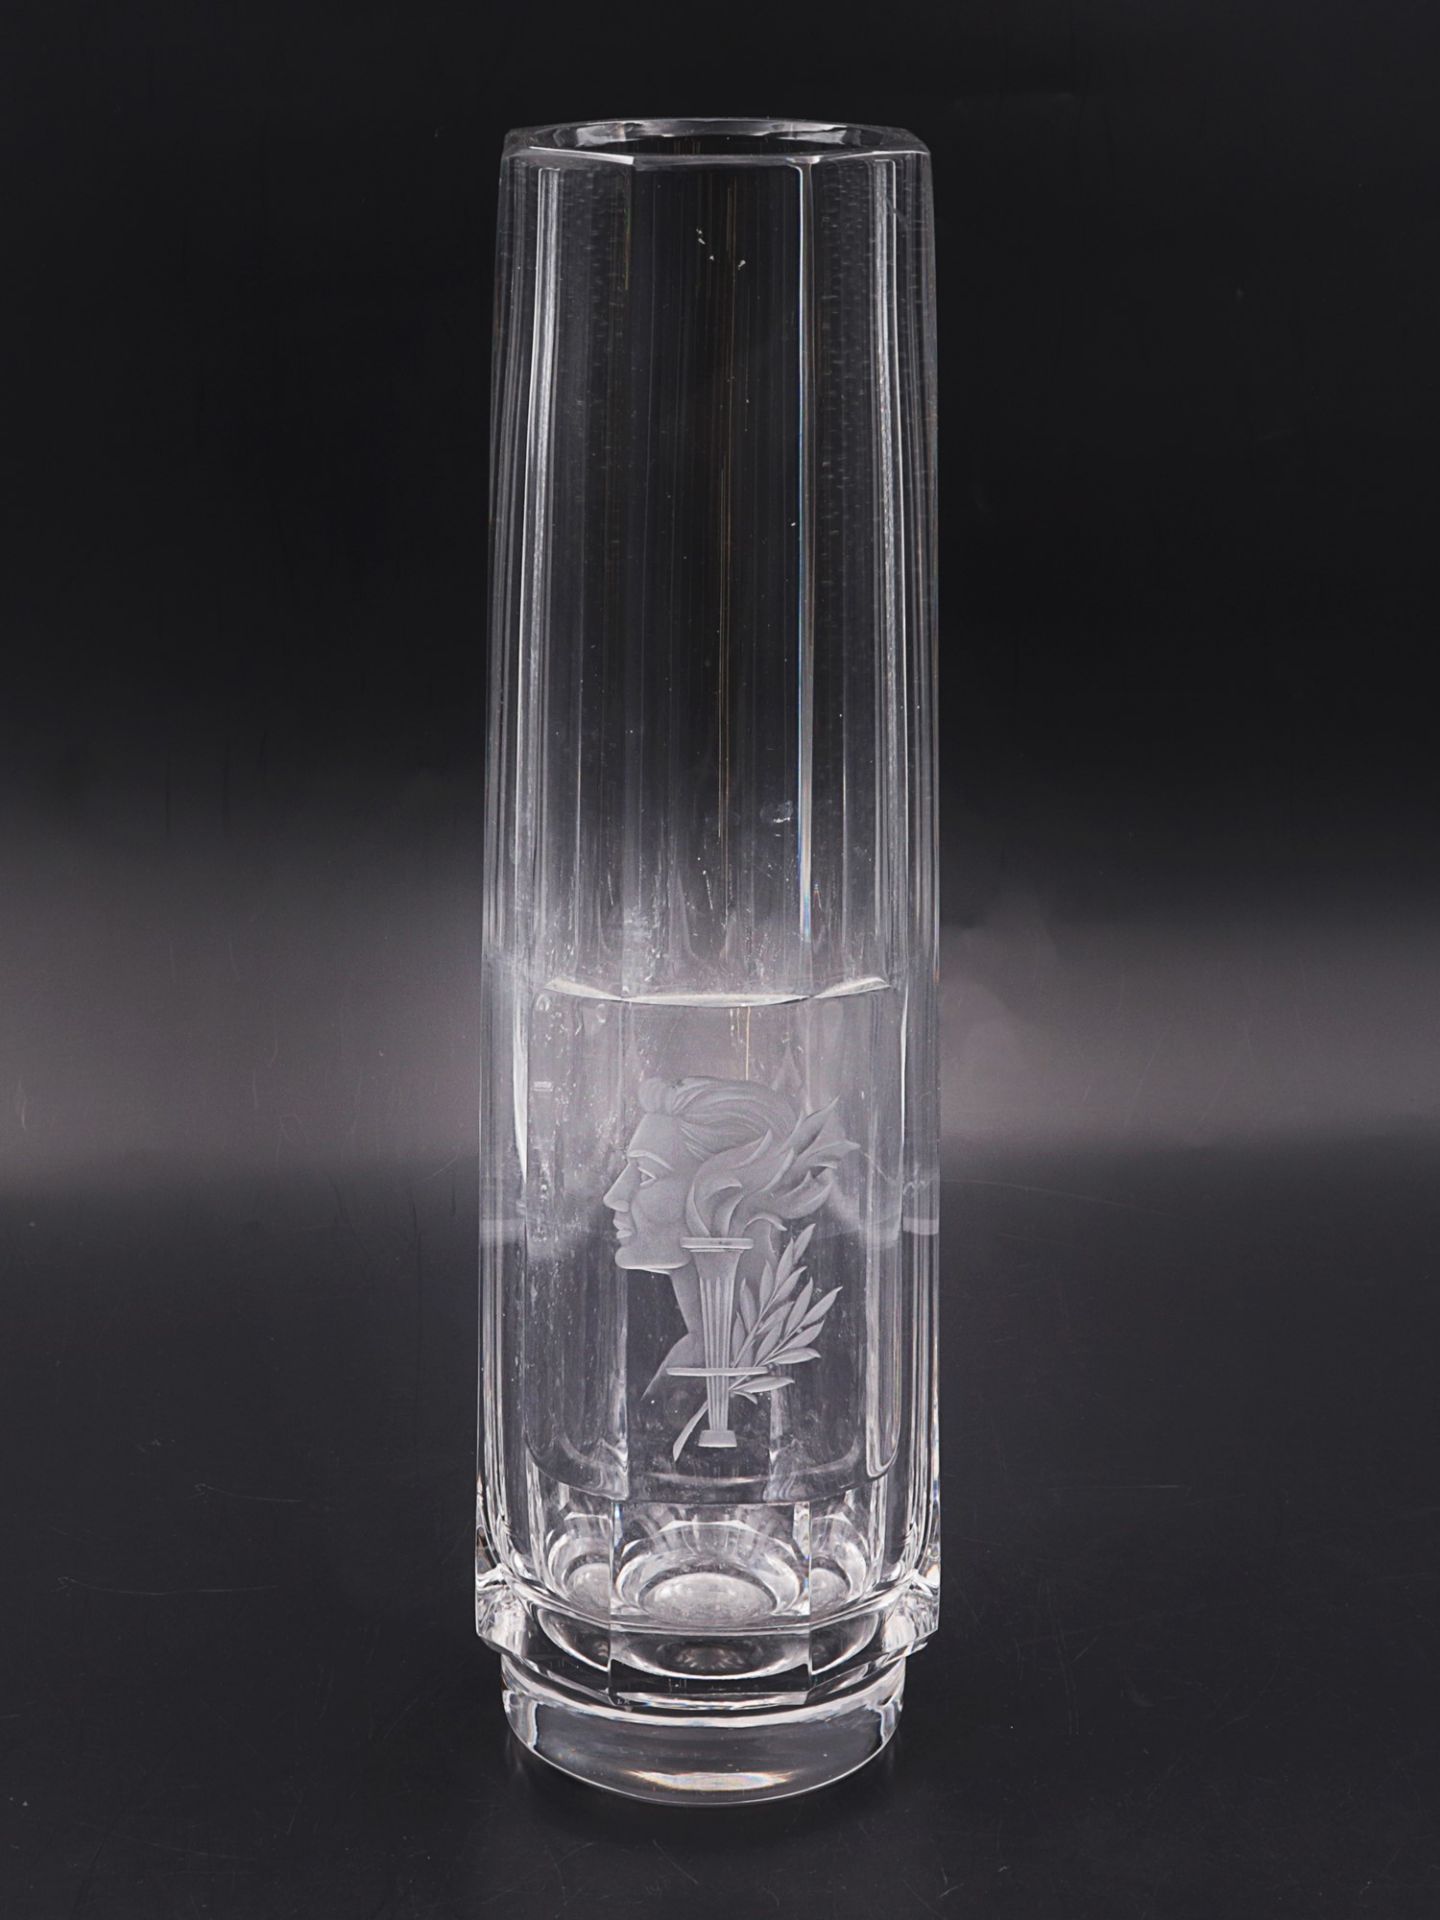 Vase um 1930, farbloses Glas, runder Stand, hoher konischer Korpus m. geschliffenem Ra